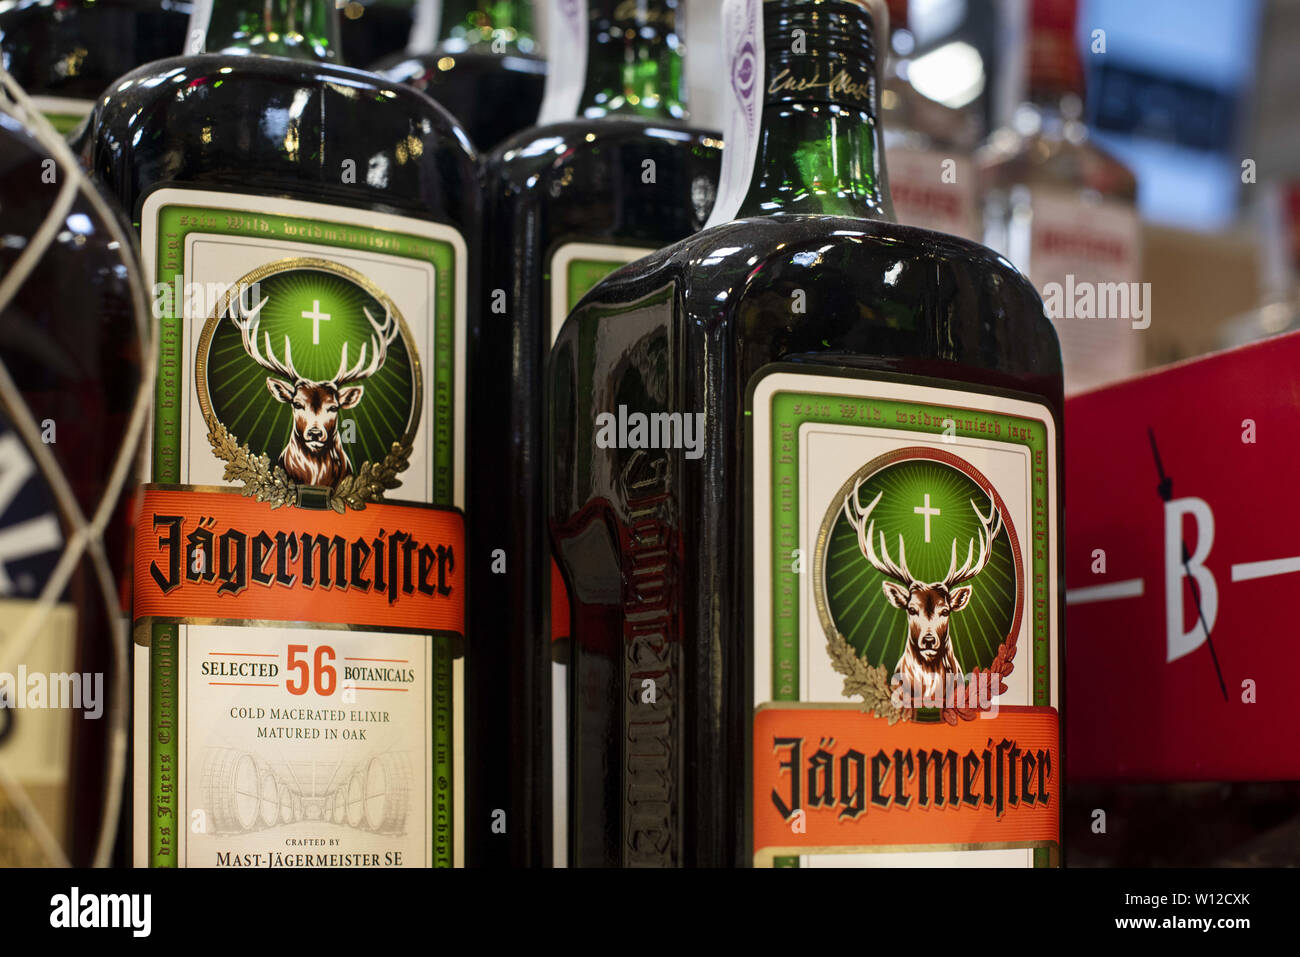 6 giugno 2019 - Spagna - Bottiglie di tedesco liquore alle erbe marca JÃ  germeister¤esposti per la vendita al supermercato Carrefour in Spagna.  (Credito Immagine: © Budrul Chukrut/SOPA immagini via ZUMA filo